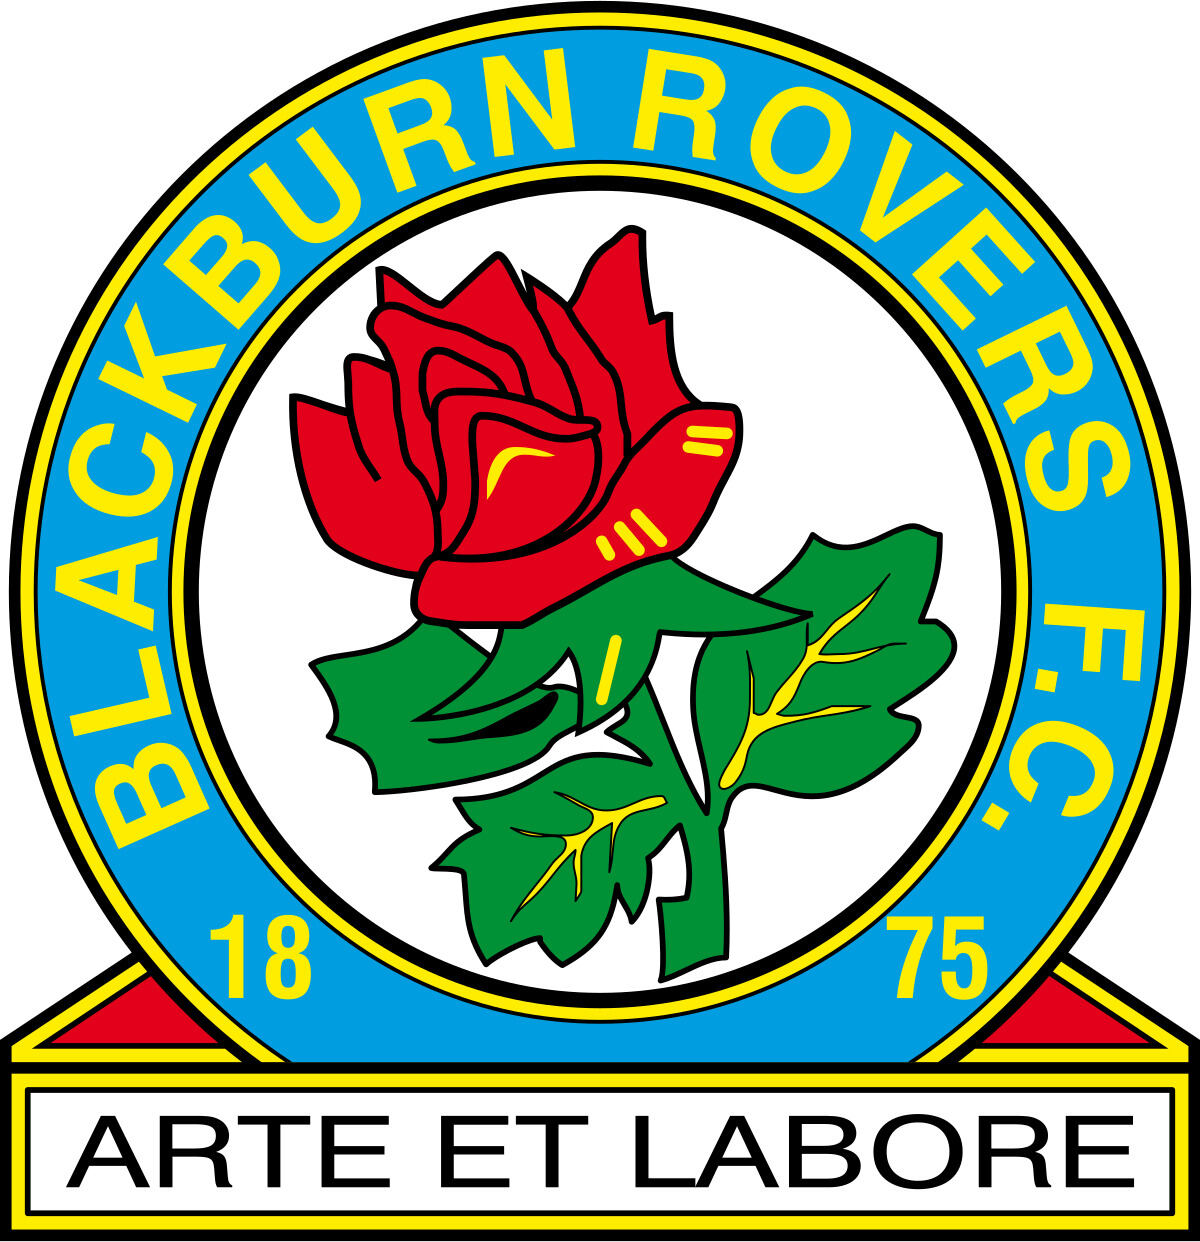 blackburn-rovers-fc-11-football-club-facts